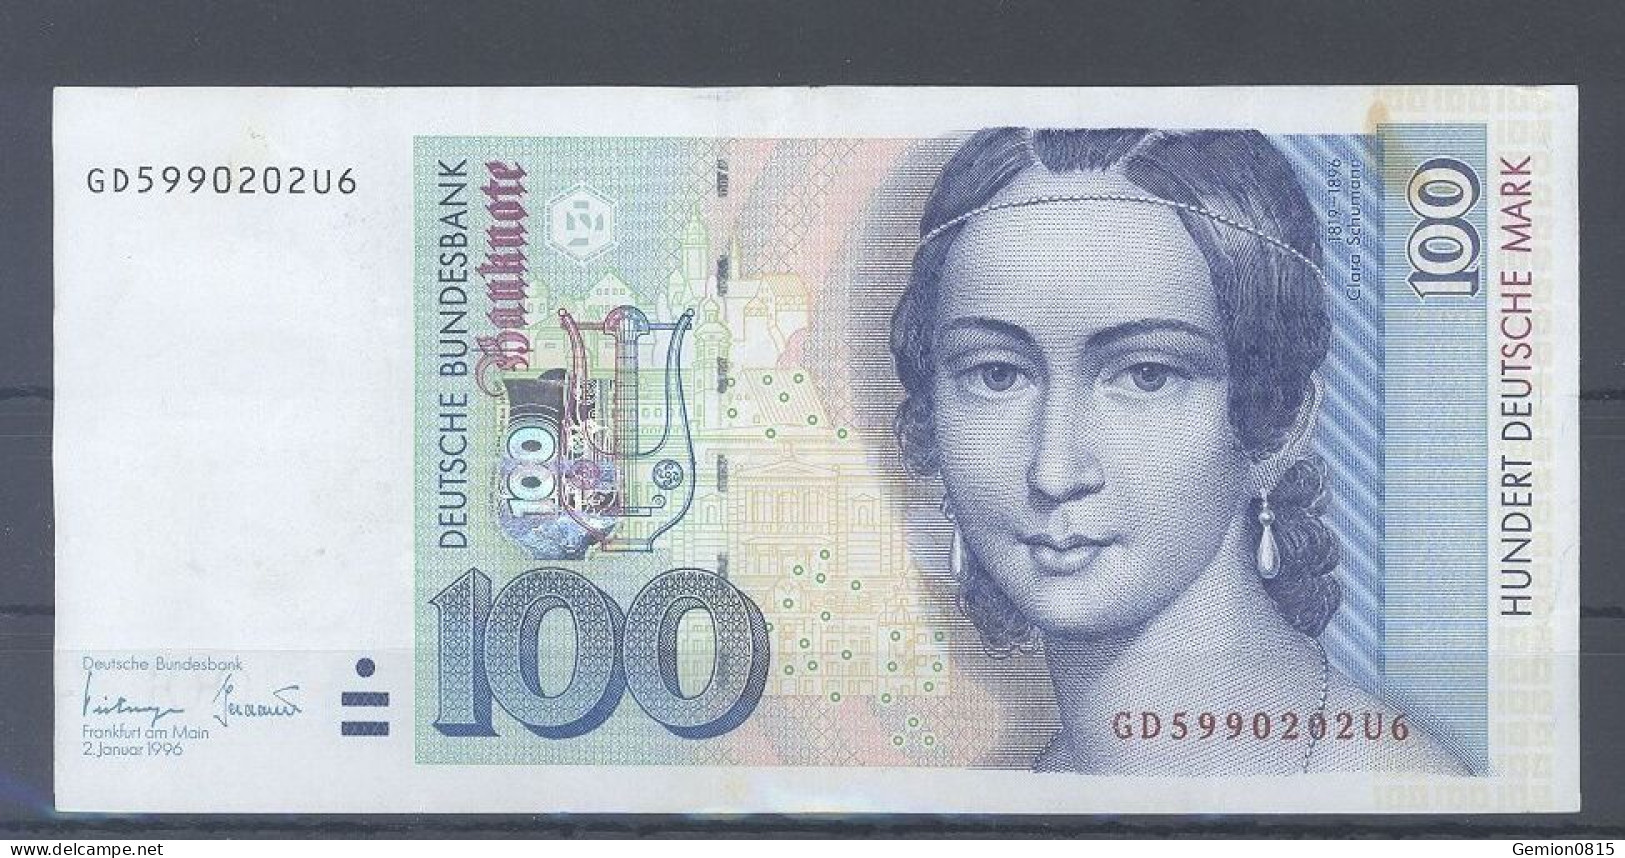 100 Deutsche Mark 1996 - 100 DM